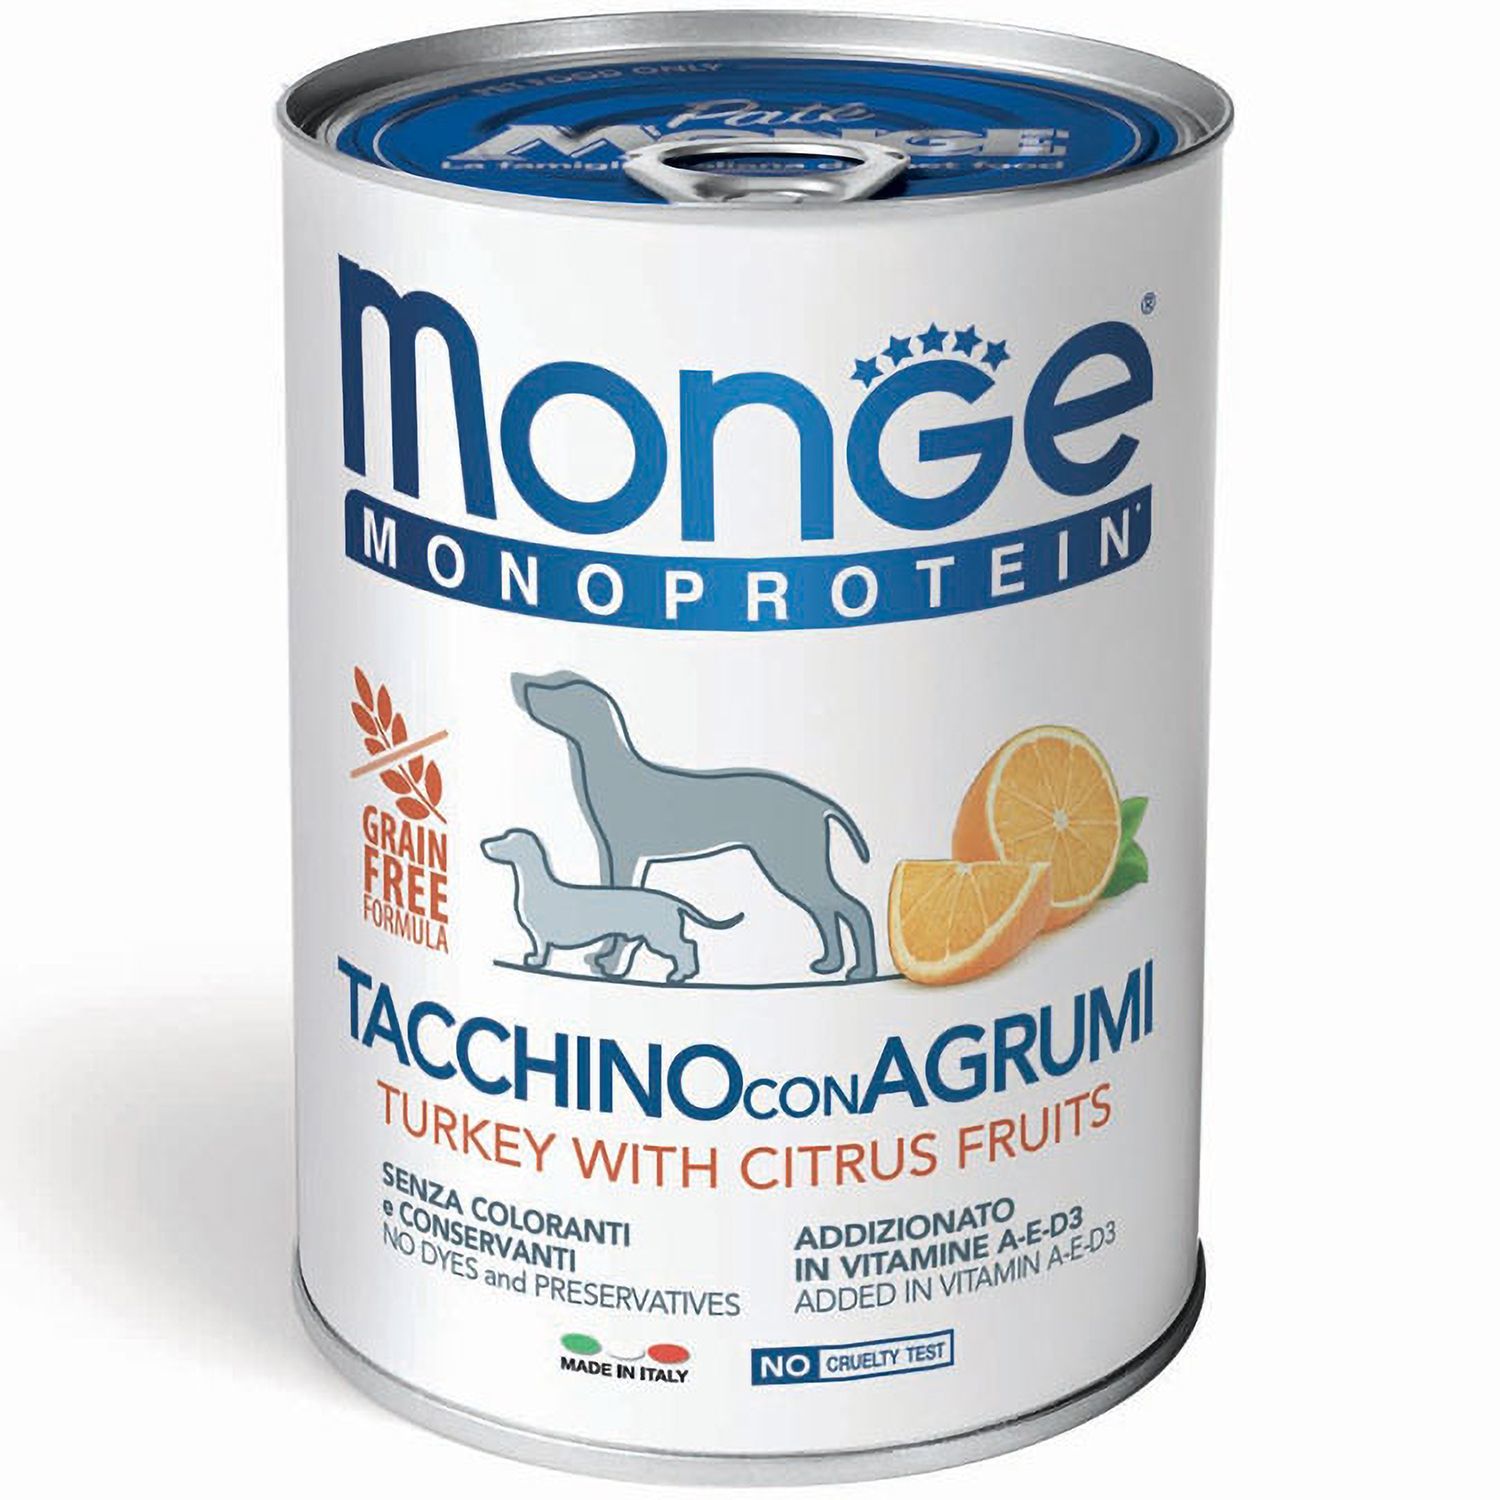 Monge Паштет для собак Monge Dog Monoproteico Fruits монопротеиновый, из индейки с рисом и цитрусовыми 70014335_1.jpeg